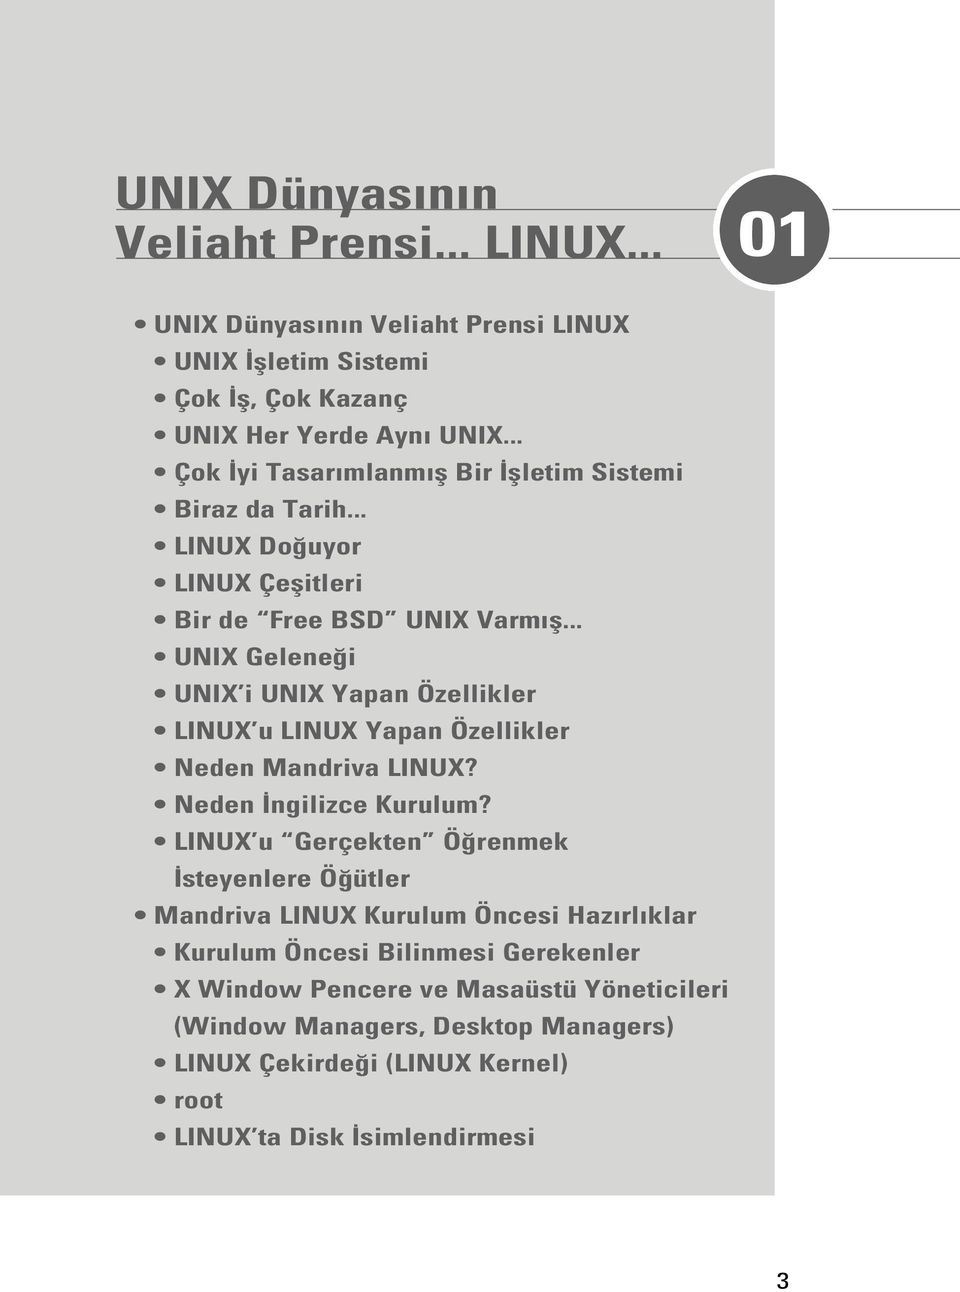 .. UNIX Gelene i UNIX i UNIX Yapan Özellikler LINUX u LINUX Yapan Özellikler Neden Mandriva LINUX? Neden ngilizce Kurulum?